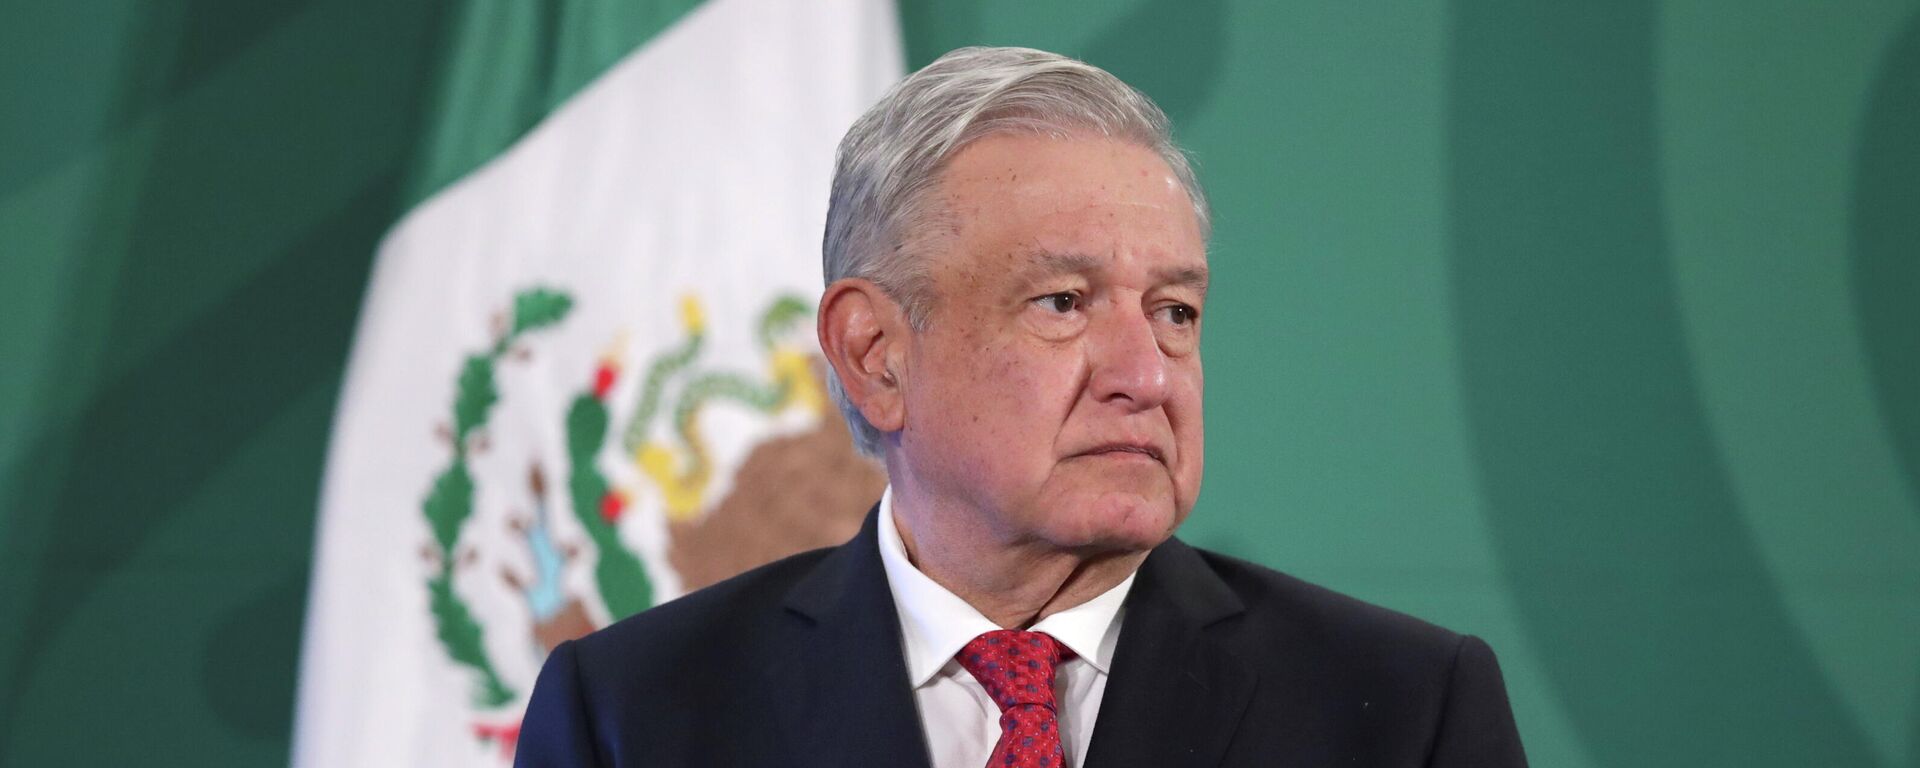 Andrés Manuel López Obrador, presidente de México - Sputnik Mundo, 1920, 30.07.2021